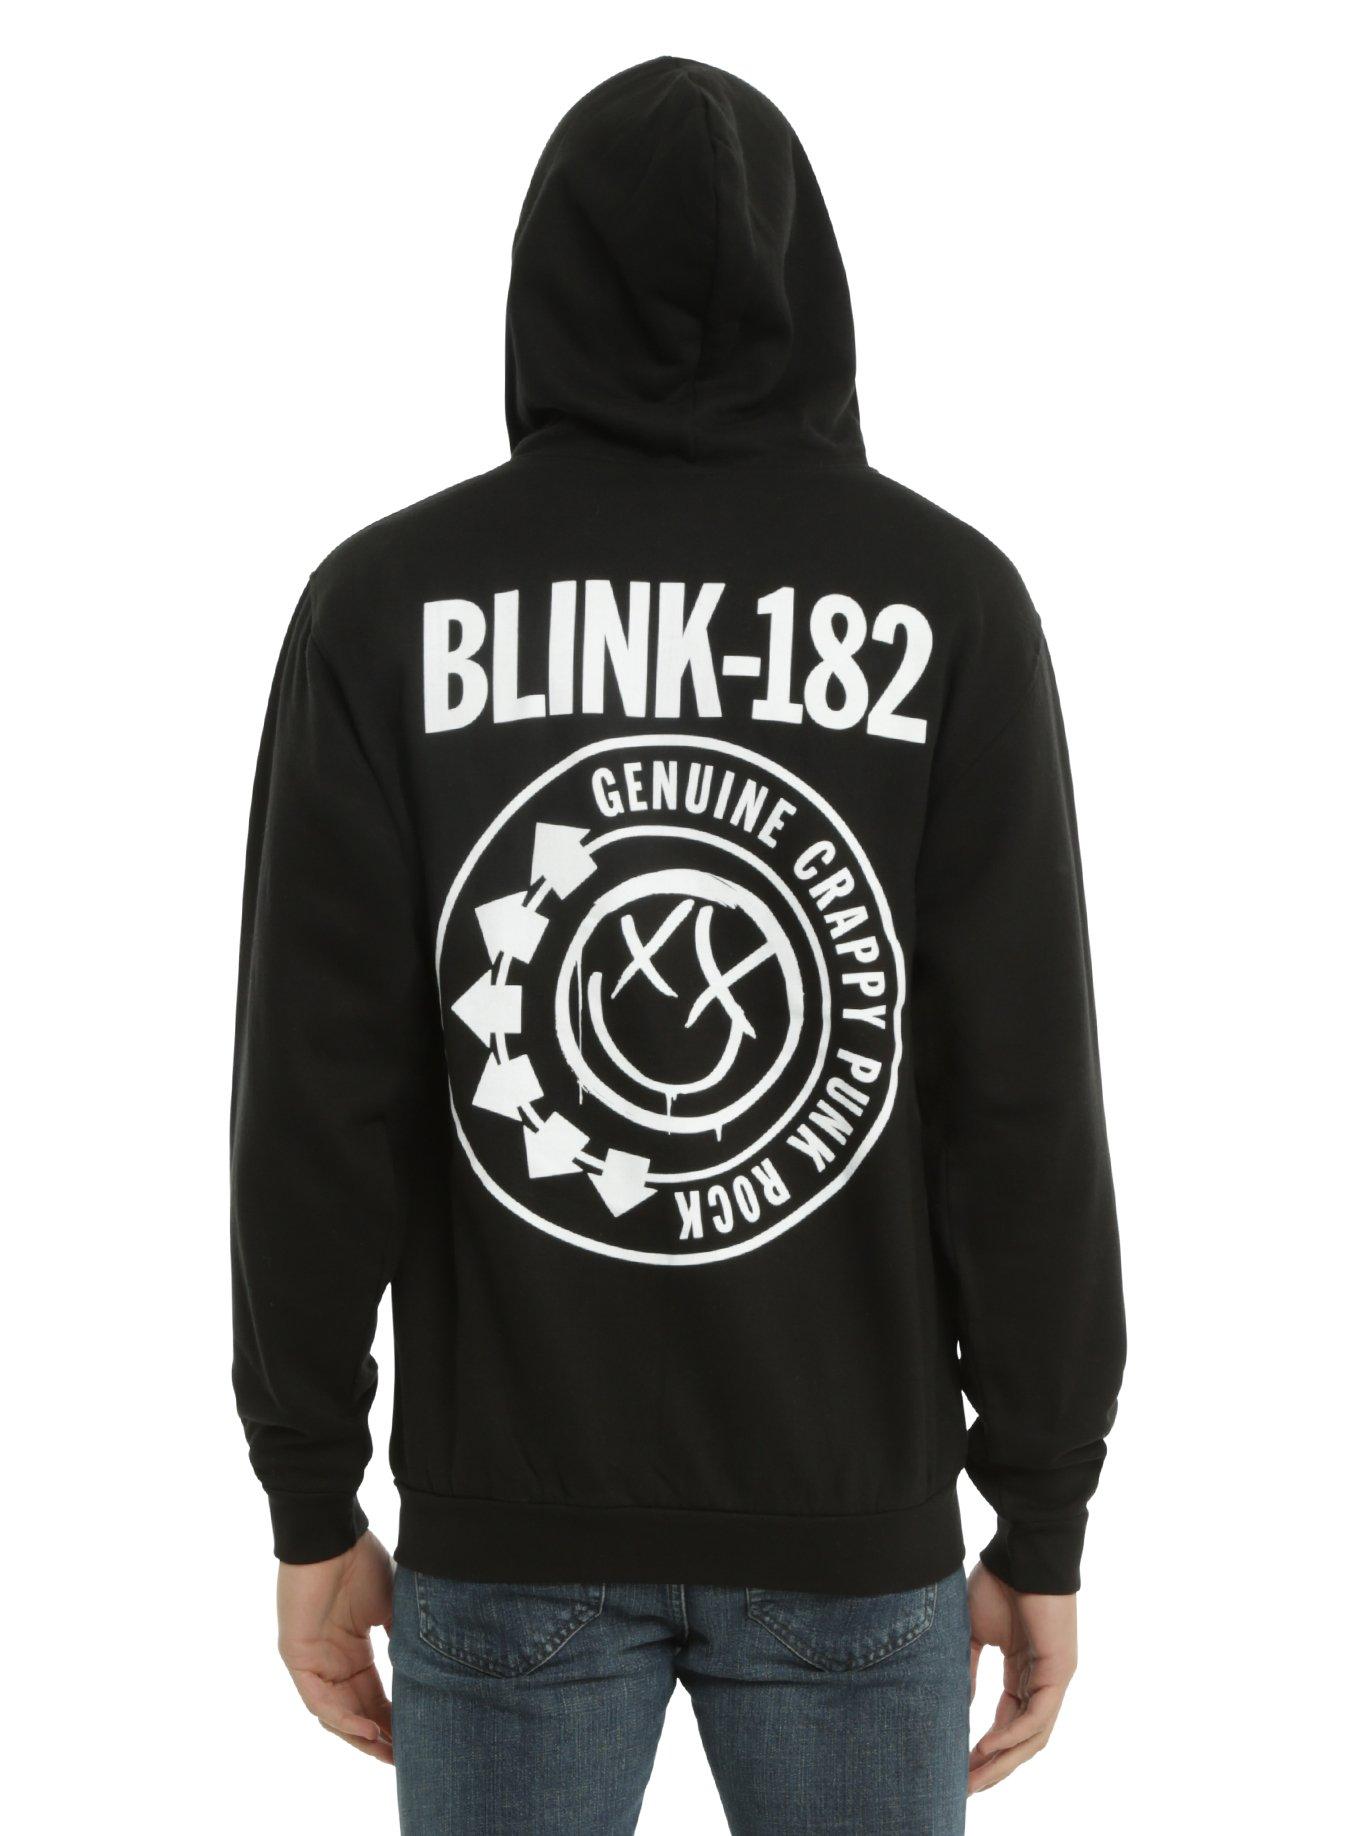 Blink-182 Crappy Punk Rock Hoodie, BLACK, hi-res